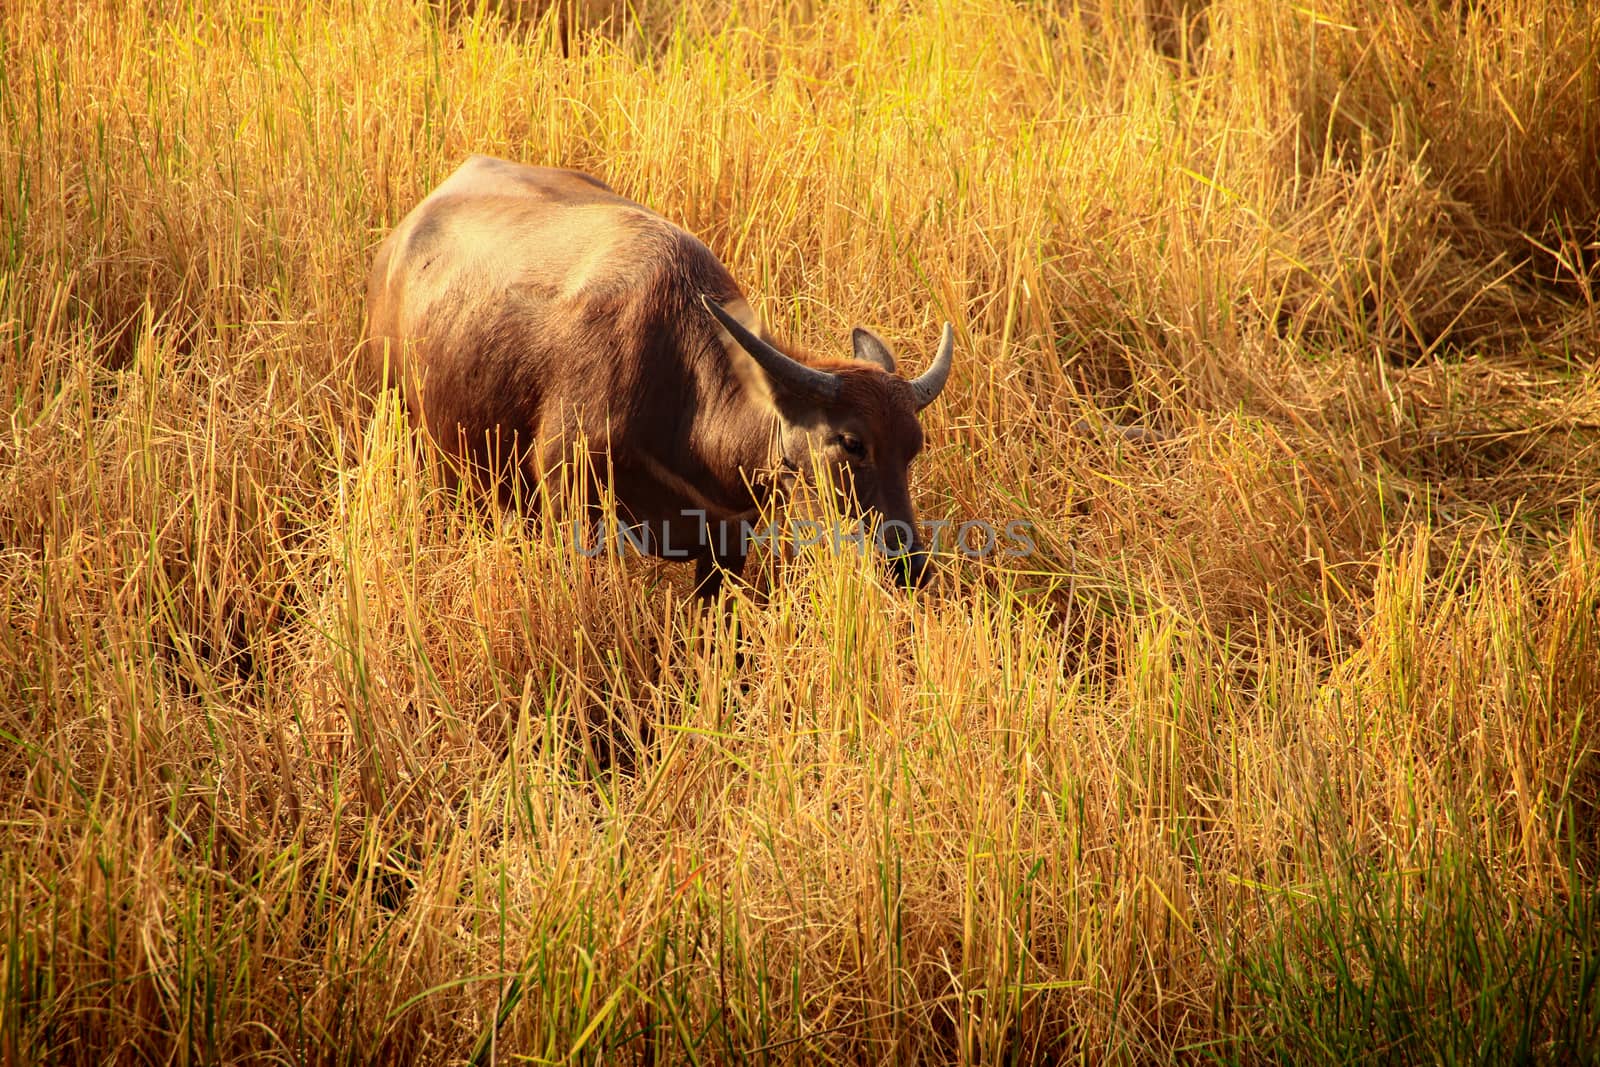 Grazing water buffalo by Sonnet15